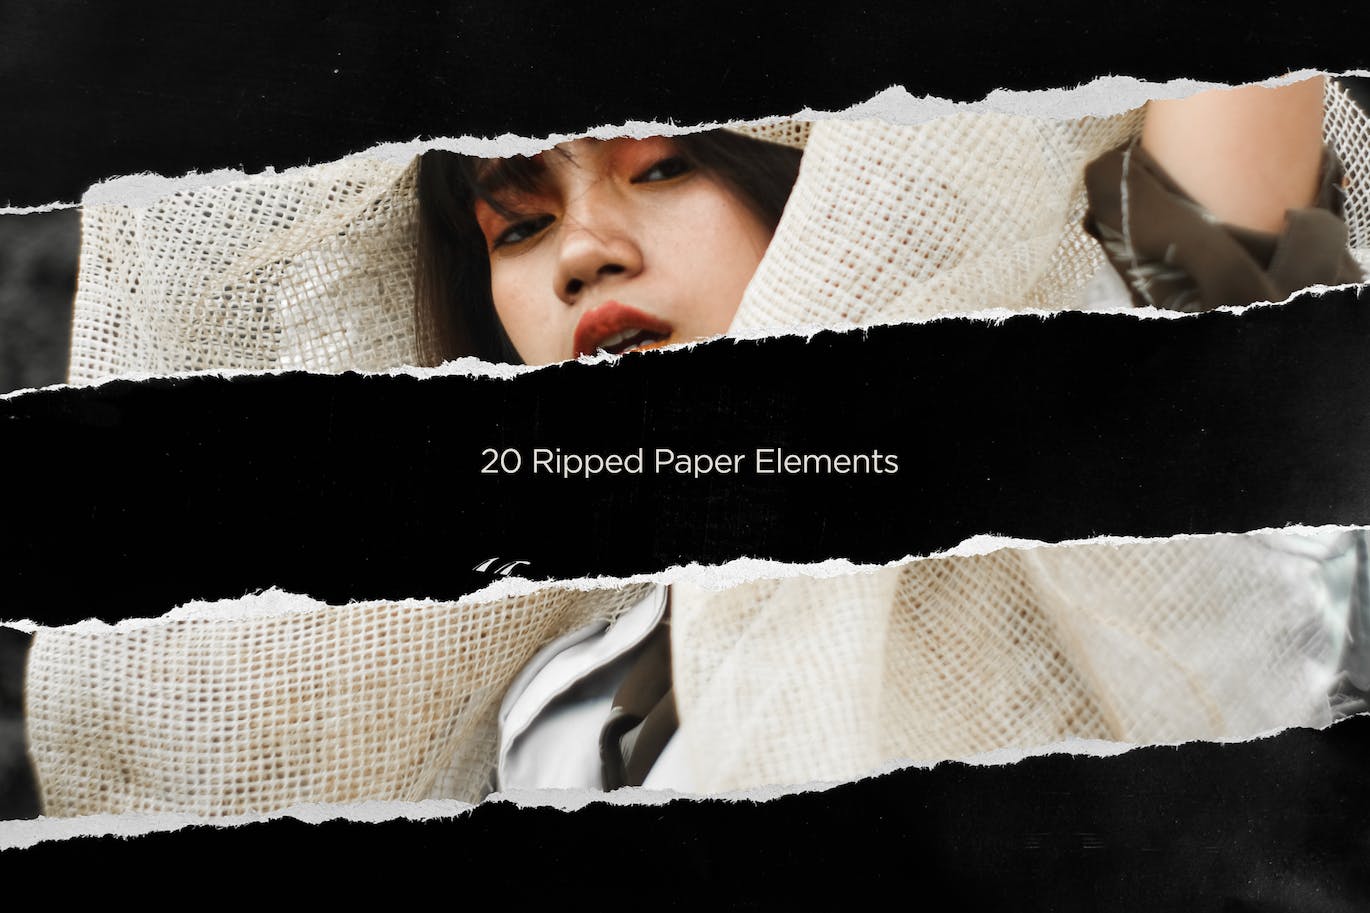 20张撕碎黑纸元素照片叠层素材 20 Ripped Paper Elements 图片素材 第1张